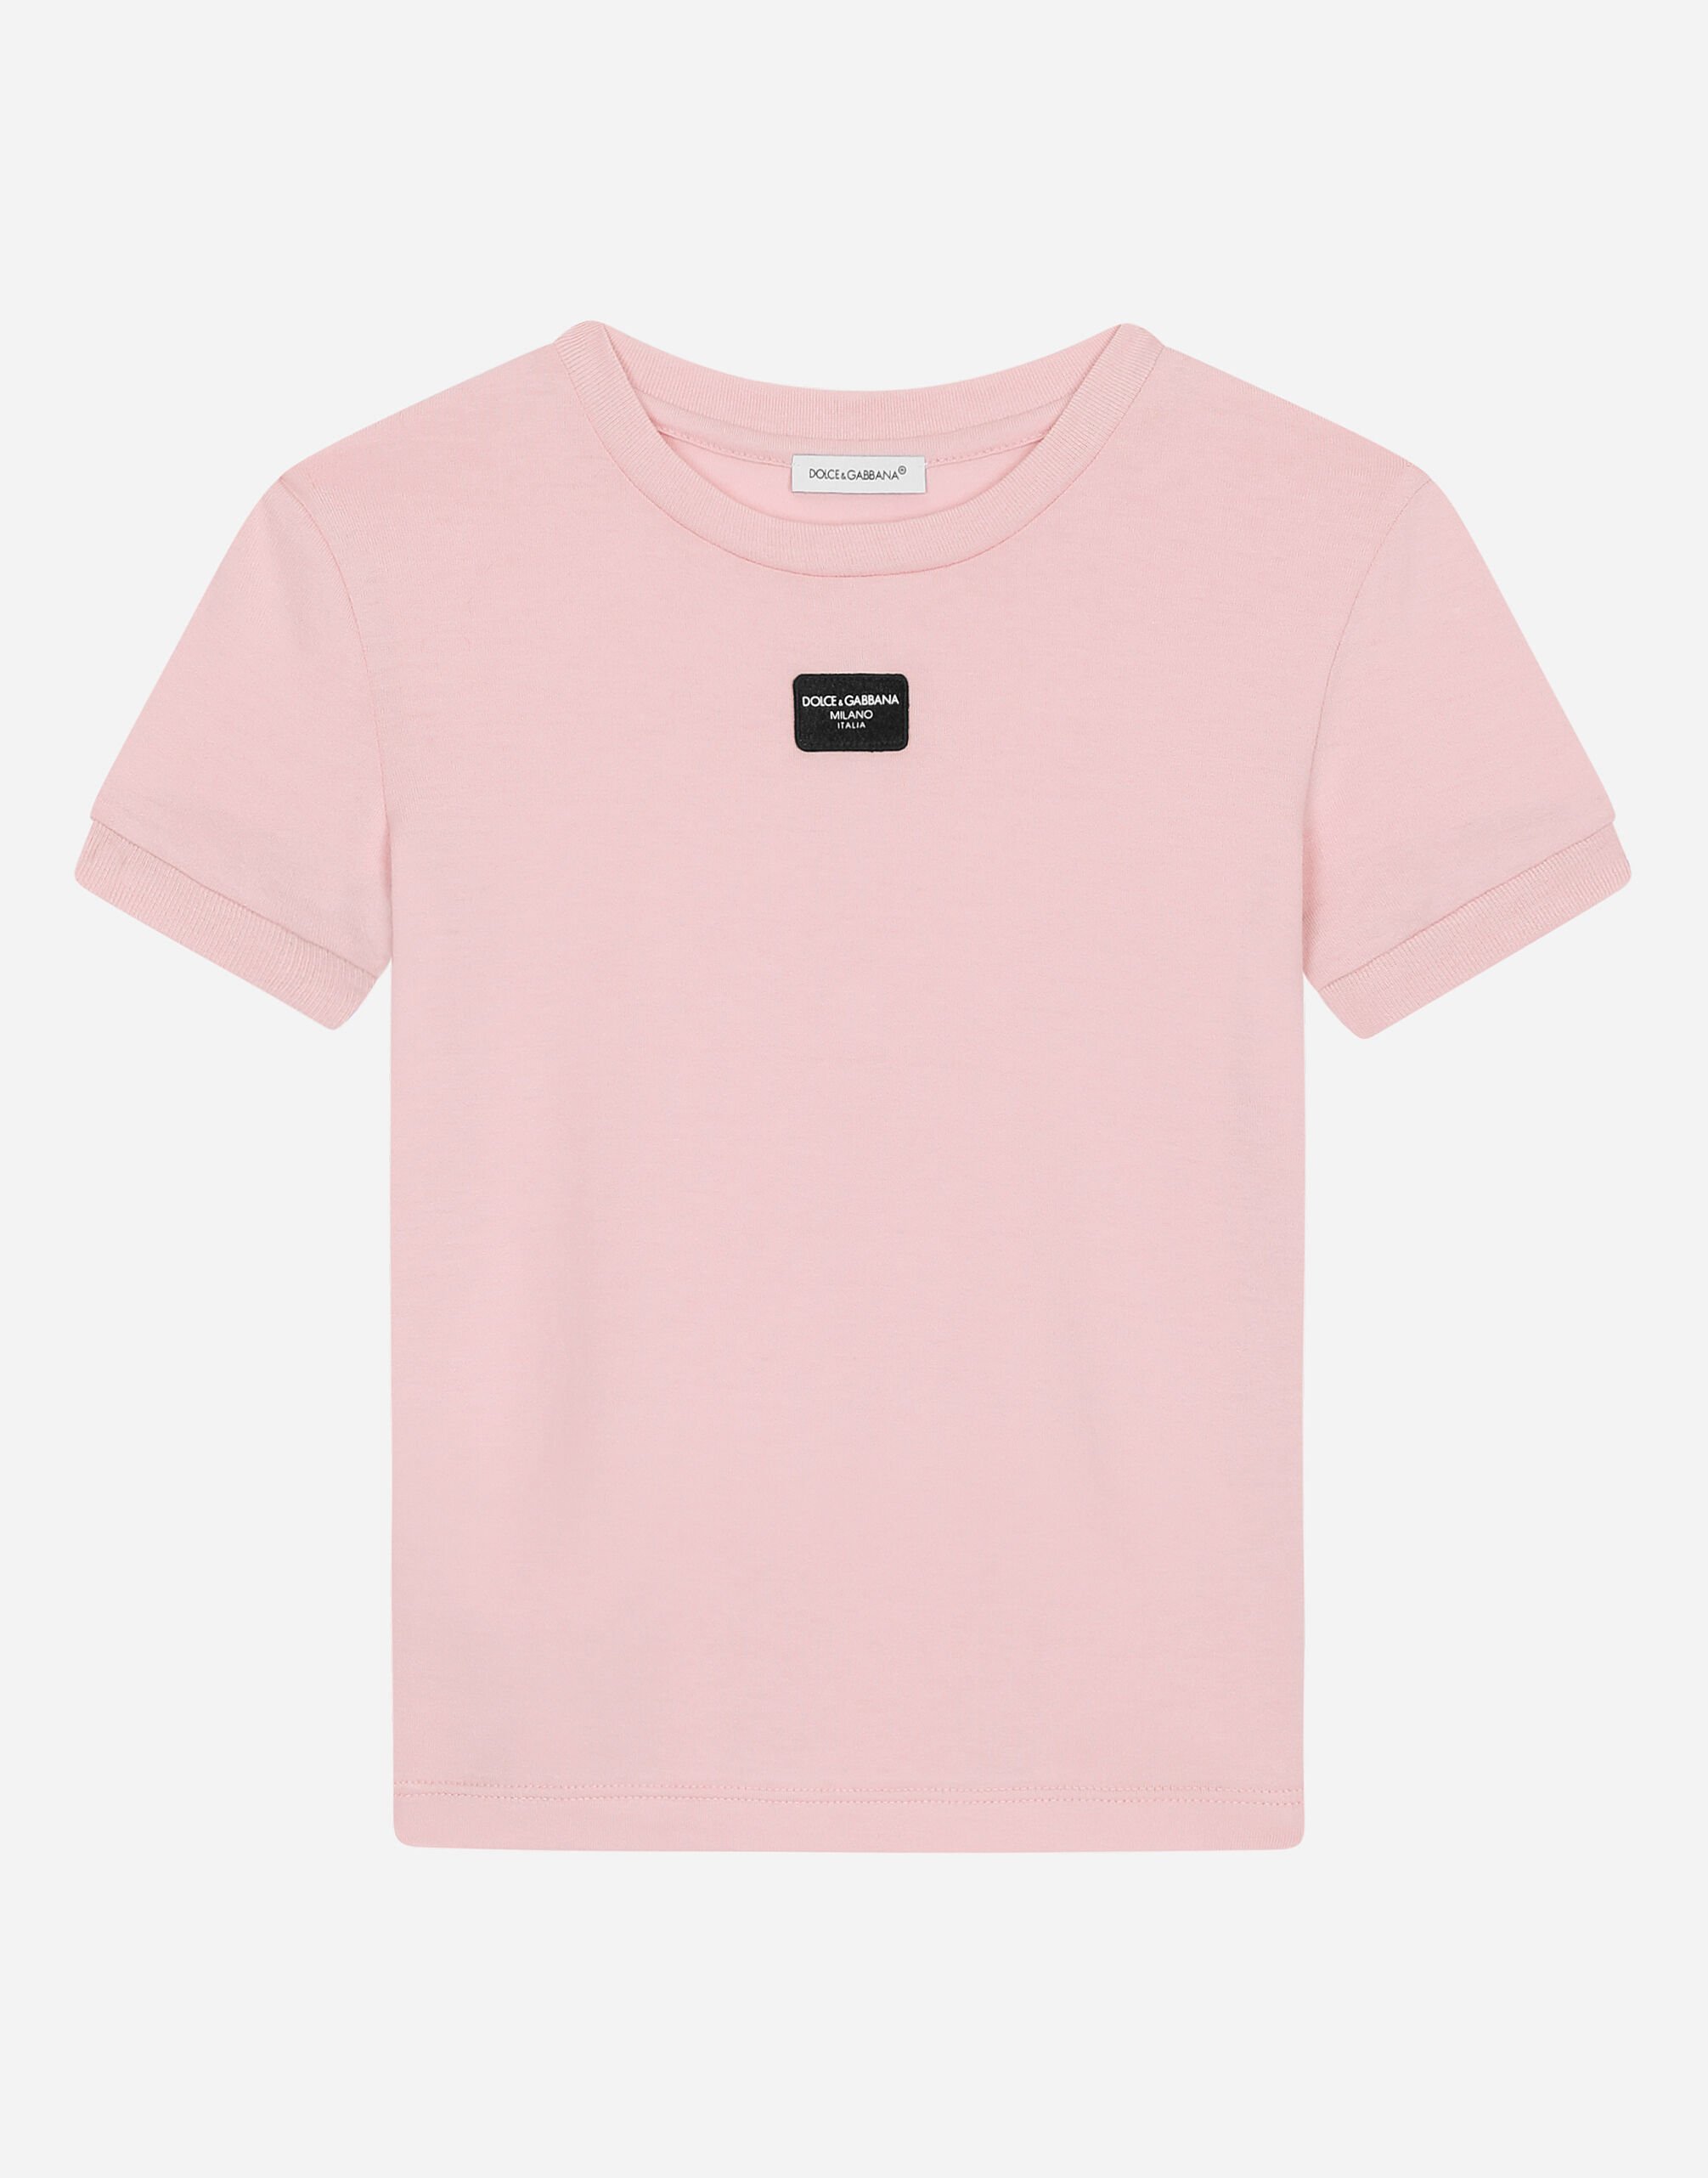 Dolce & Gabbana Camiseta de punto con placa con logotipo Imprima L5JTMEG7K4F